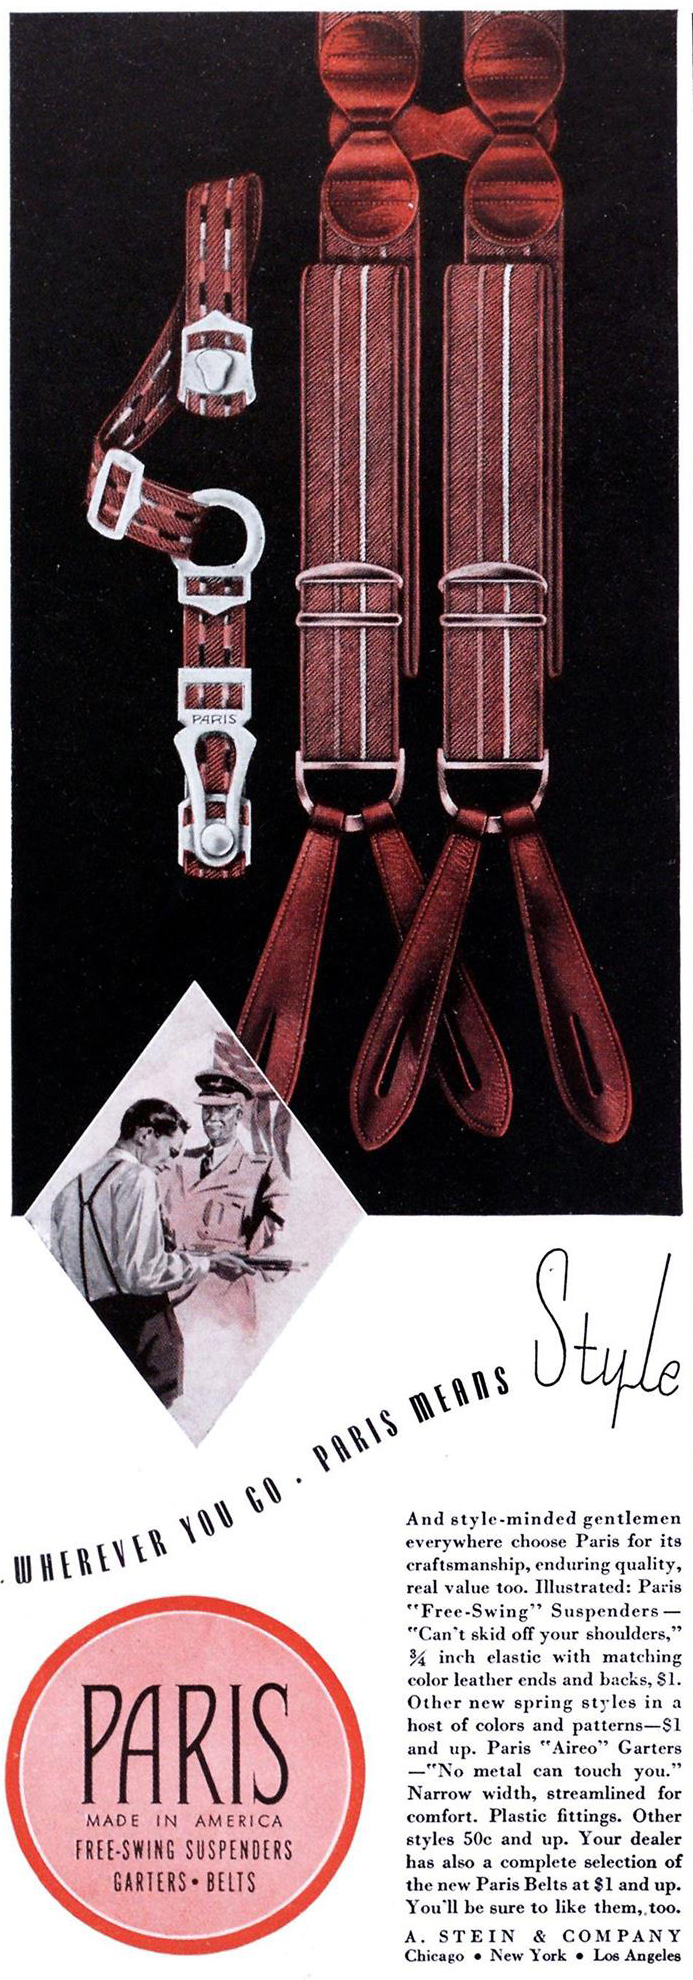 Esquire, April 1, 1941. Paris sock garters advertisement.